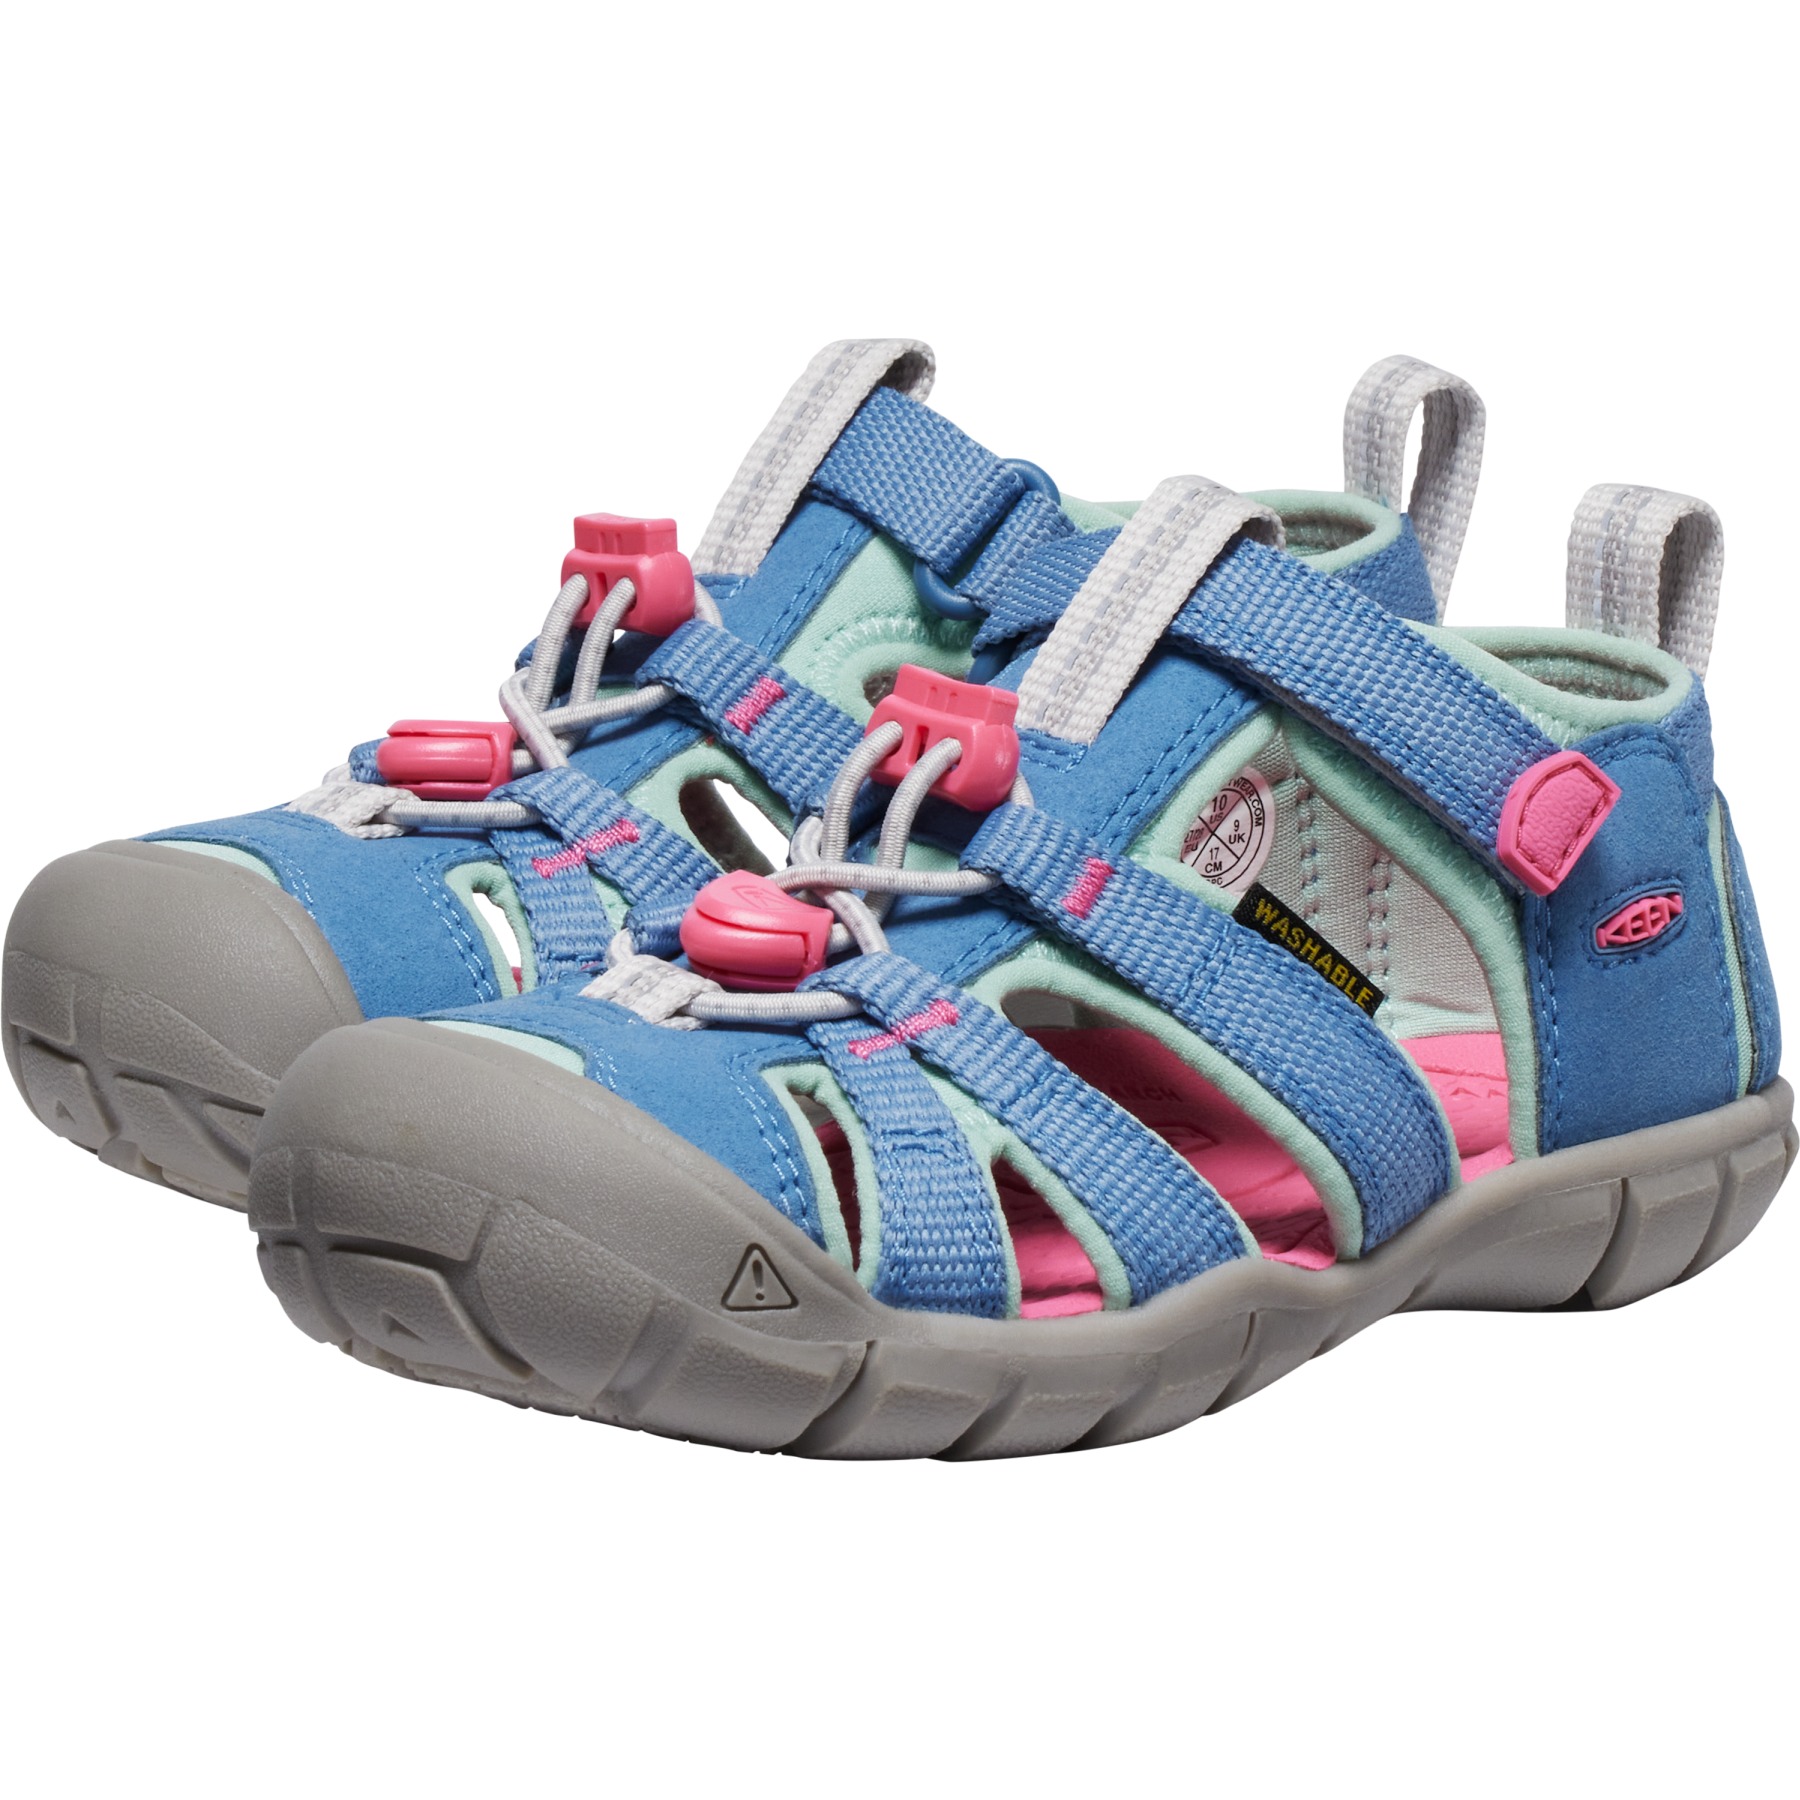 Produktbild von KEEN Seacamp II CNX Sandalen Kinder - Coronet Blue/Hot Pink